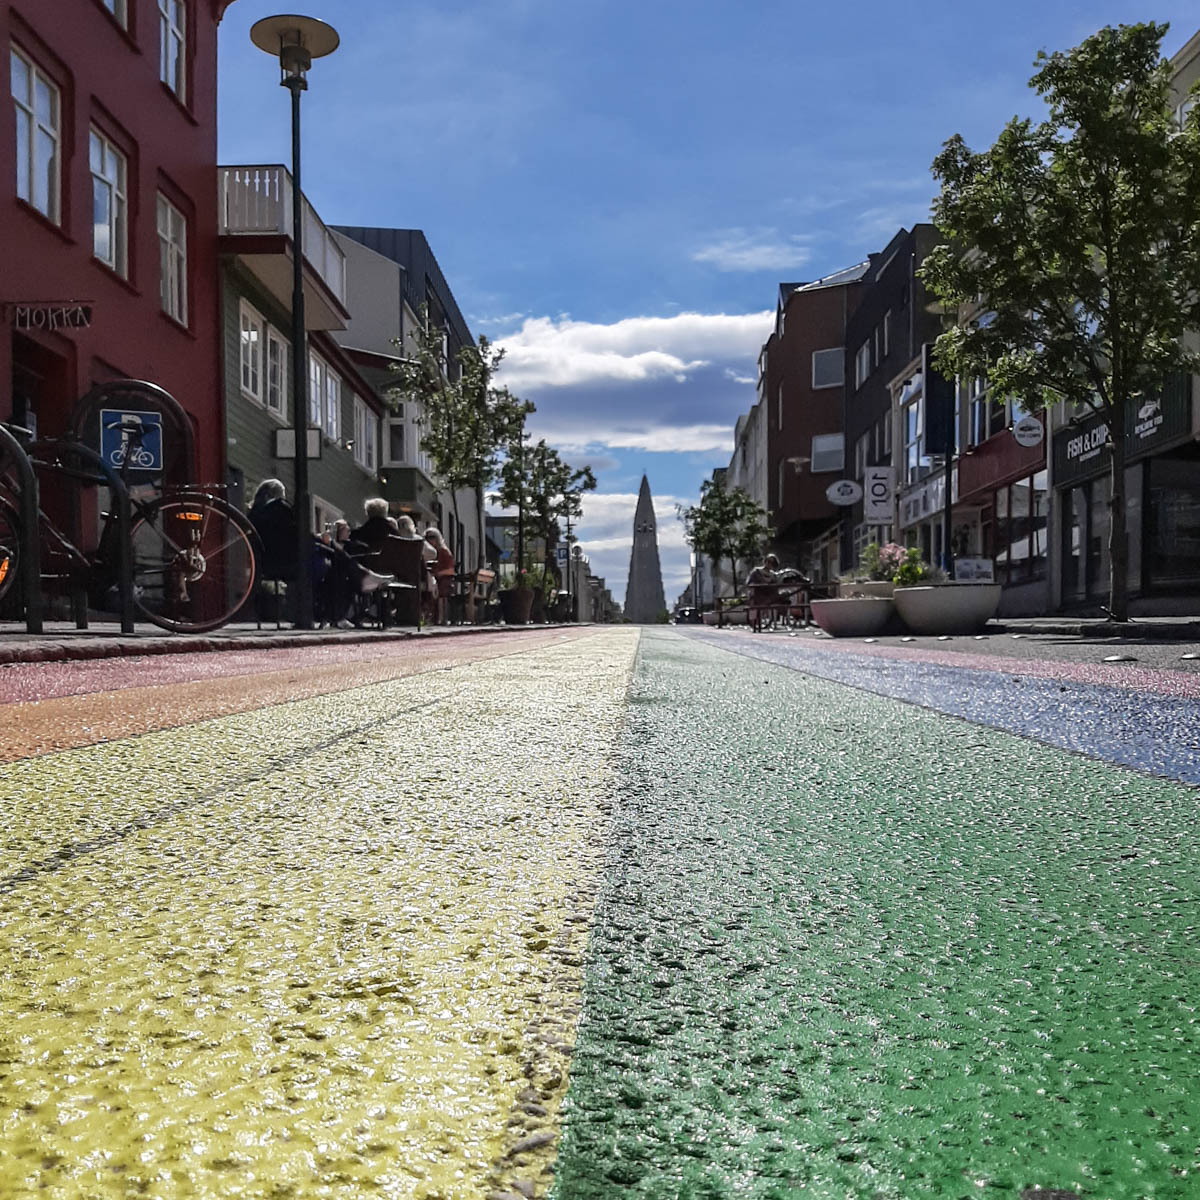 Blick von der Straße auf die Hallgrímskirkja in Reykjavík. Die Straße ist in Regenbogenfarben gestrichen.